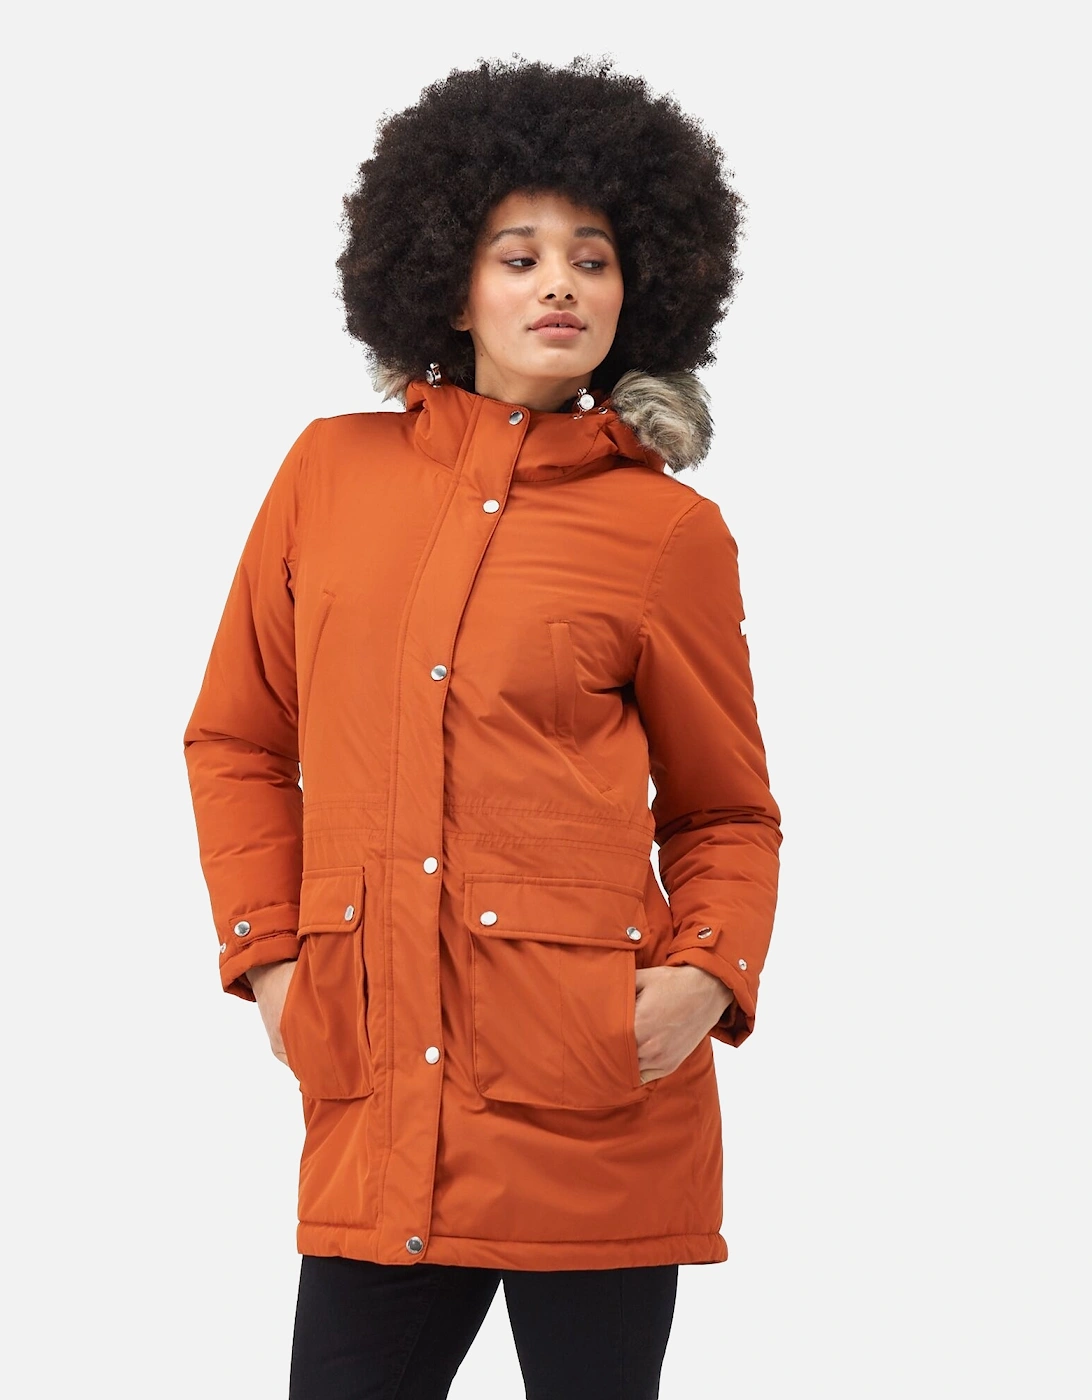 Womens/Ladies Voltera Heated Waterproof Jacket